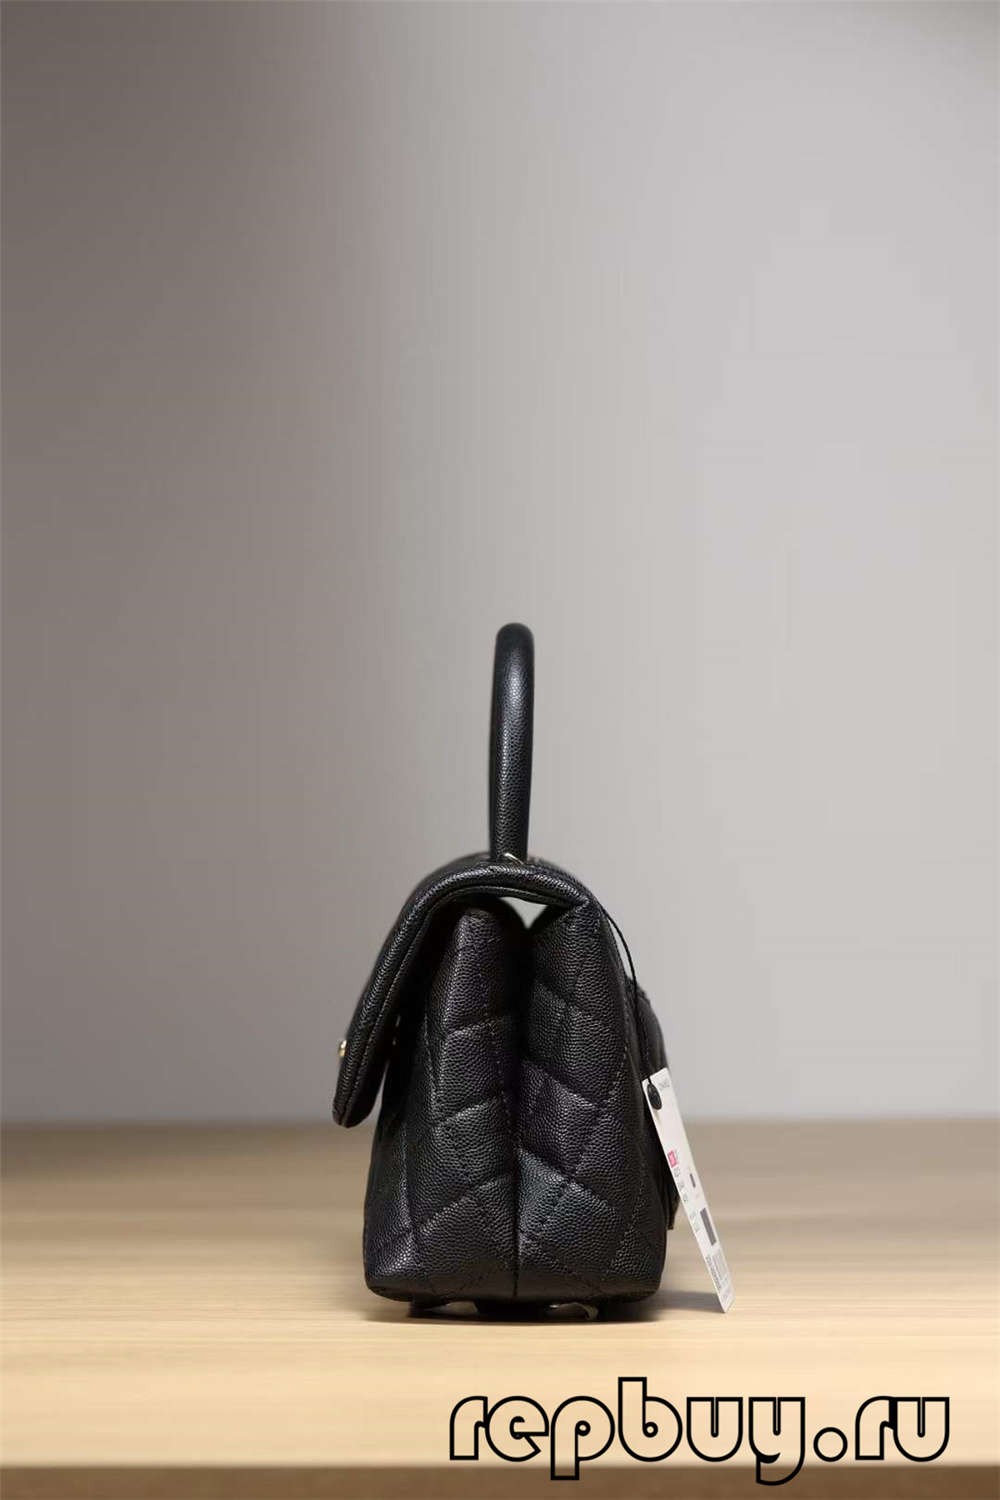 Chanel Coco Handle Top Replica Handbag Black Gold Buckle Look (Atualizado 2022) - Loja online de bolsa Louis Vuitton falsa de melhor qualidade, bolsa de designer de réplica ru